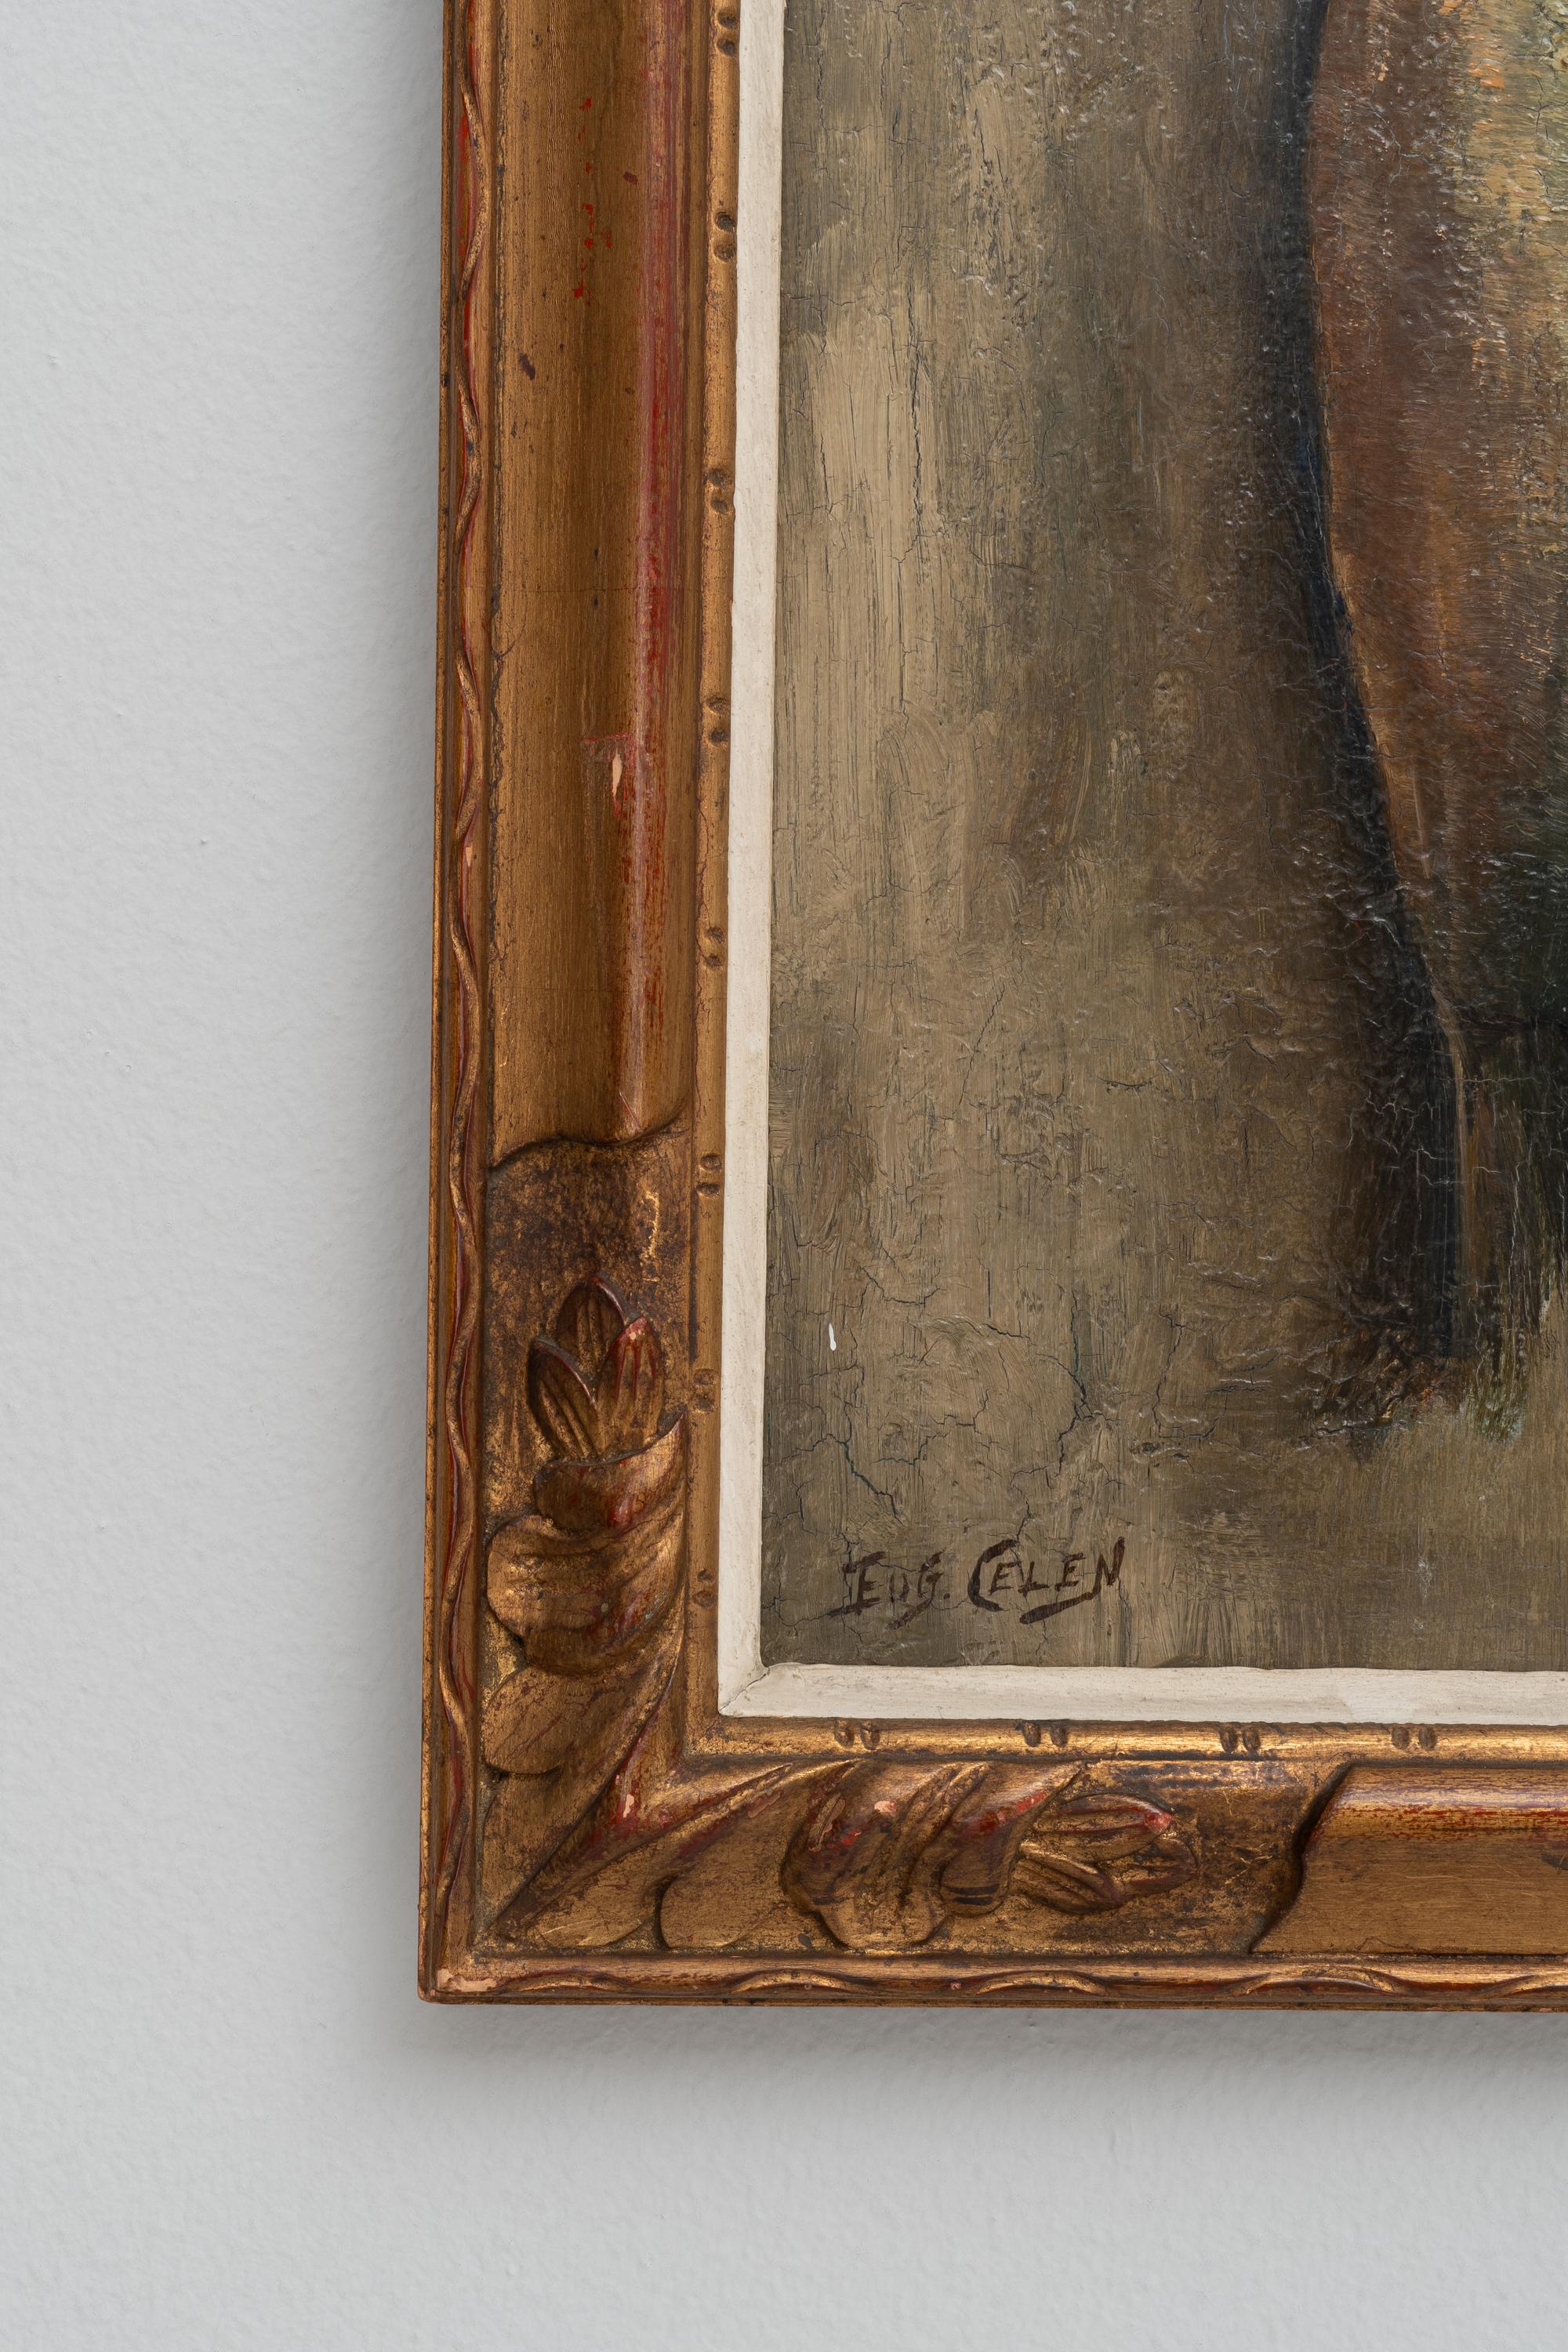 Cette peinture belge du début du XXe siècle est une représentation saisissante de la vie culinaire rustique, avec pour sujet central une paire de poissons suspendus. Le style réaliste de la peinture capture les textures scintillantes des poissons,